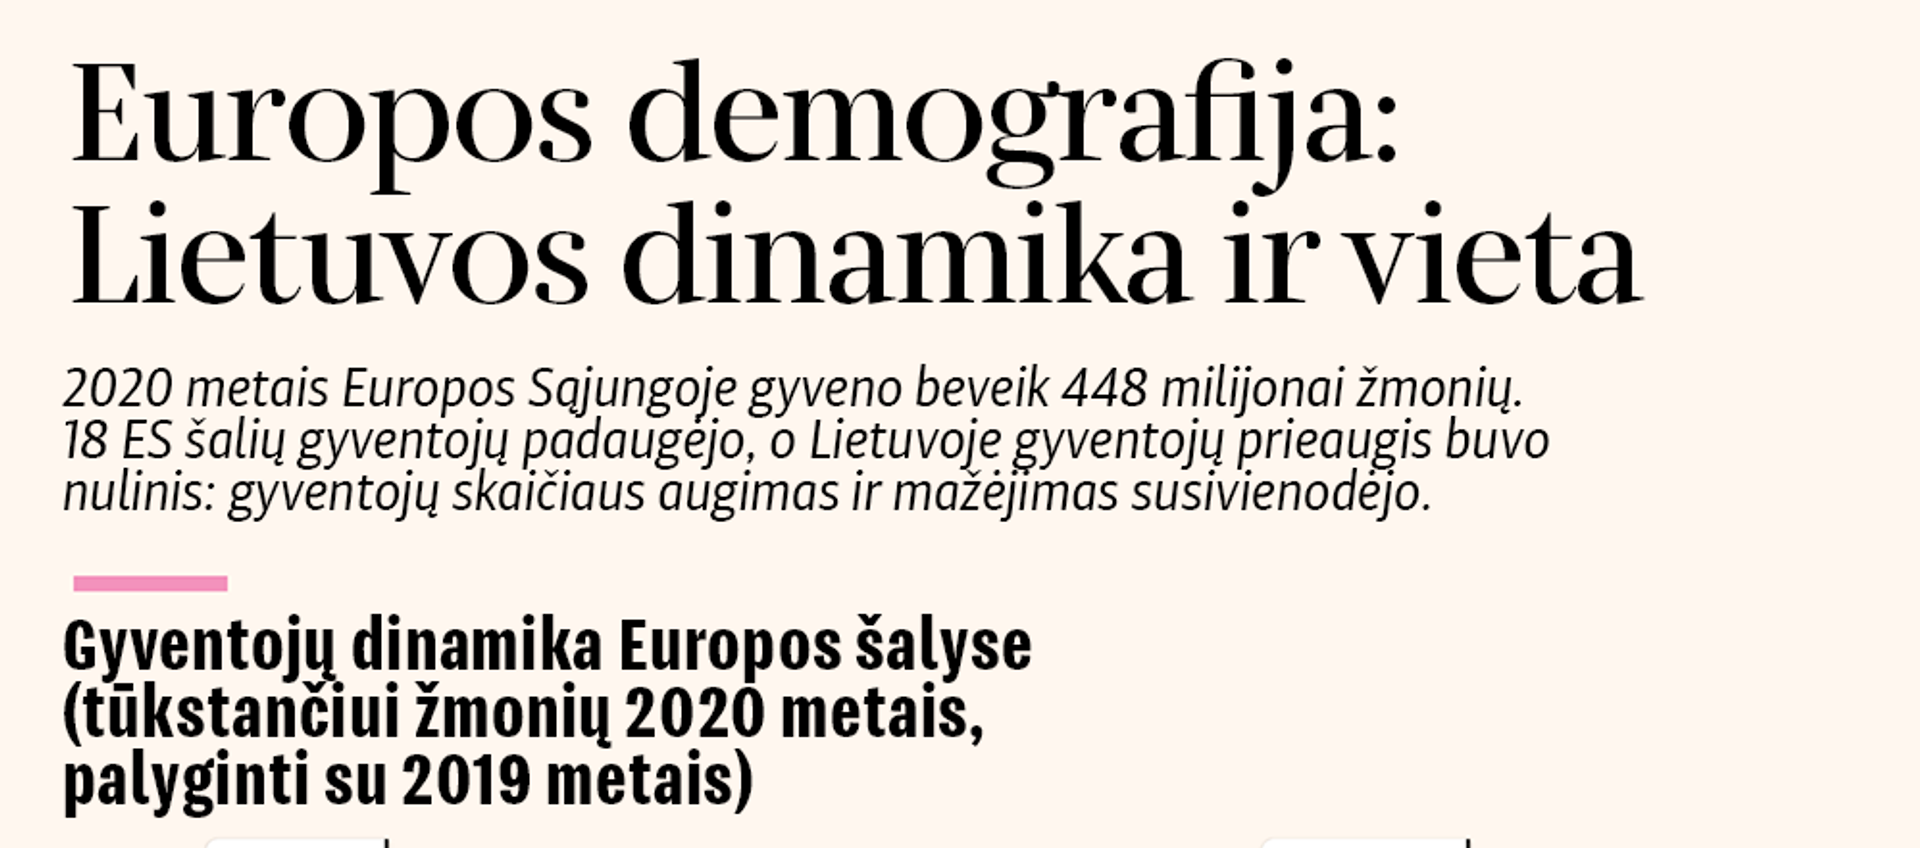 Europos demografija: Lietuvos dinamika ir vieta - Sputnik Lietuva, 1920, 30.09.2020